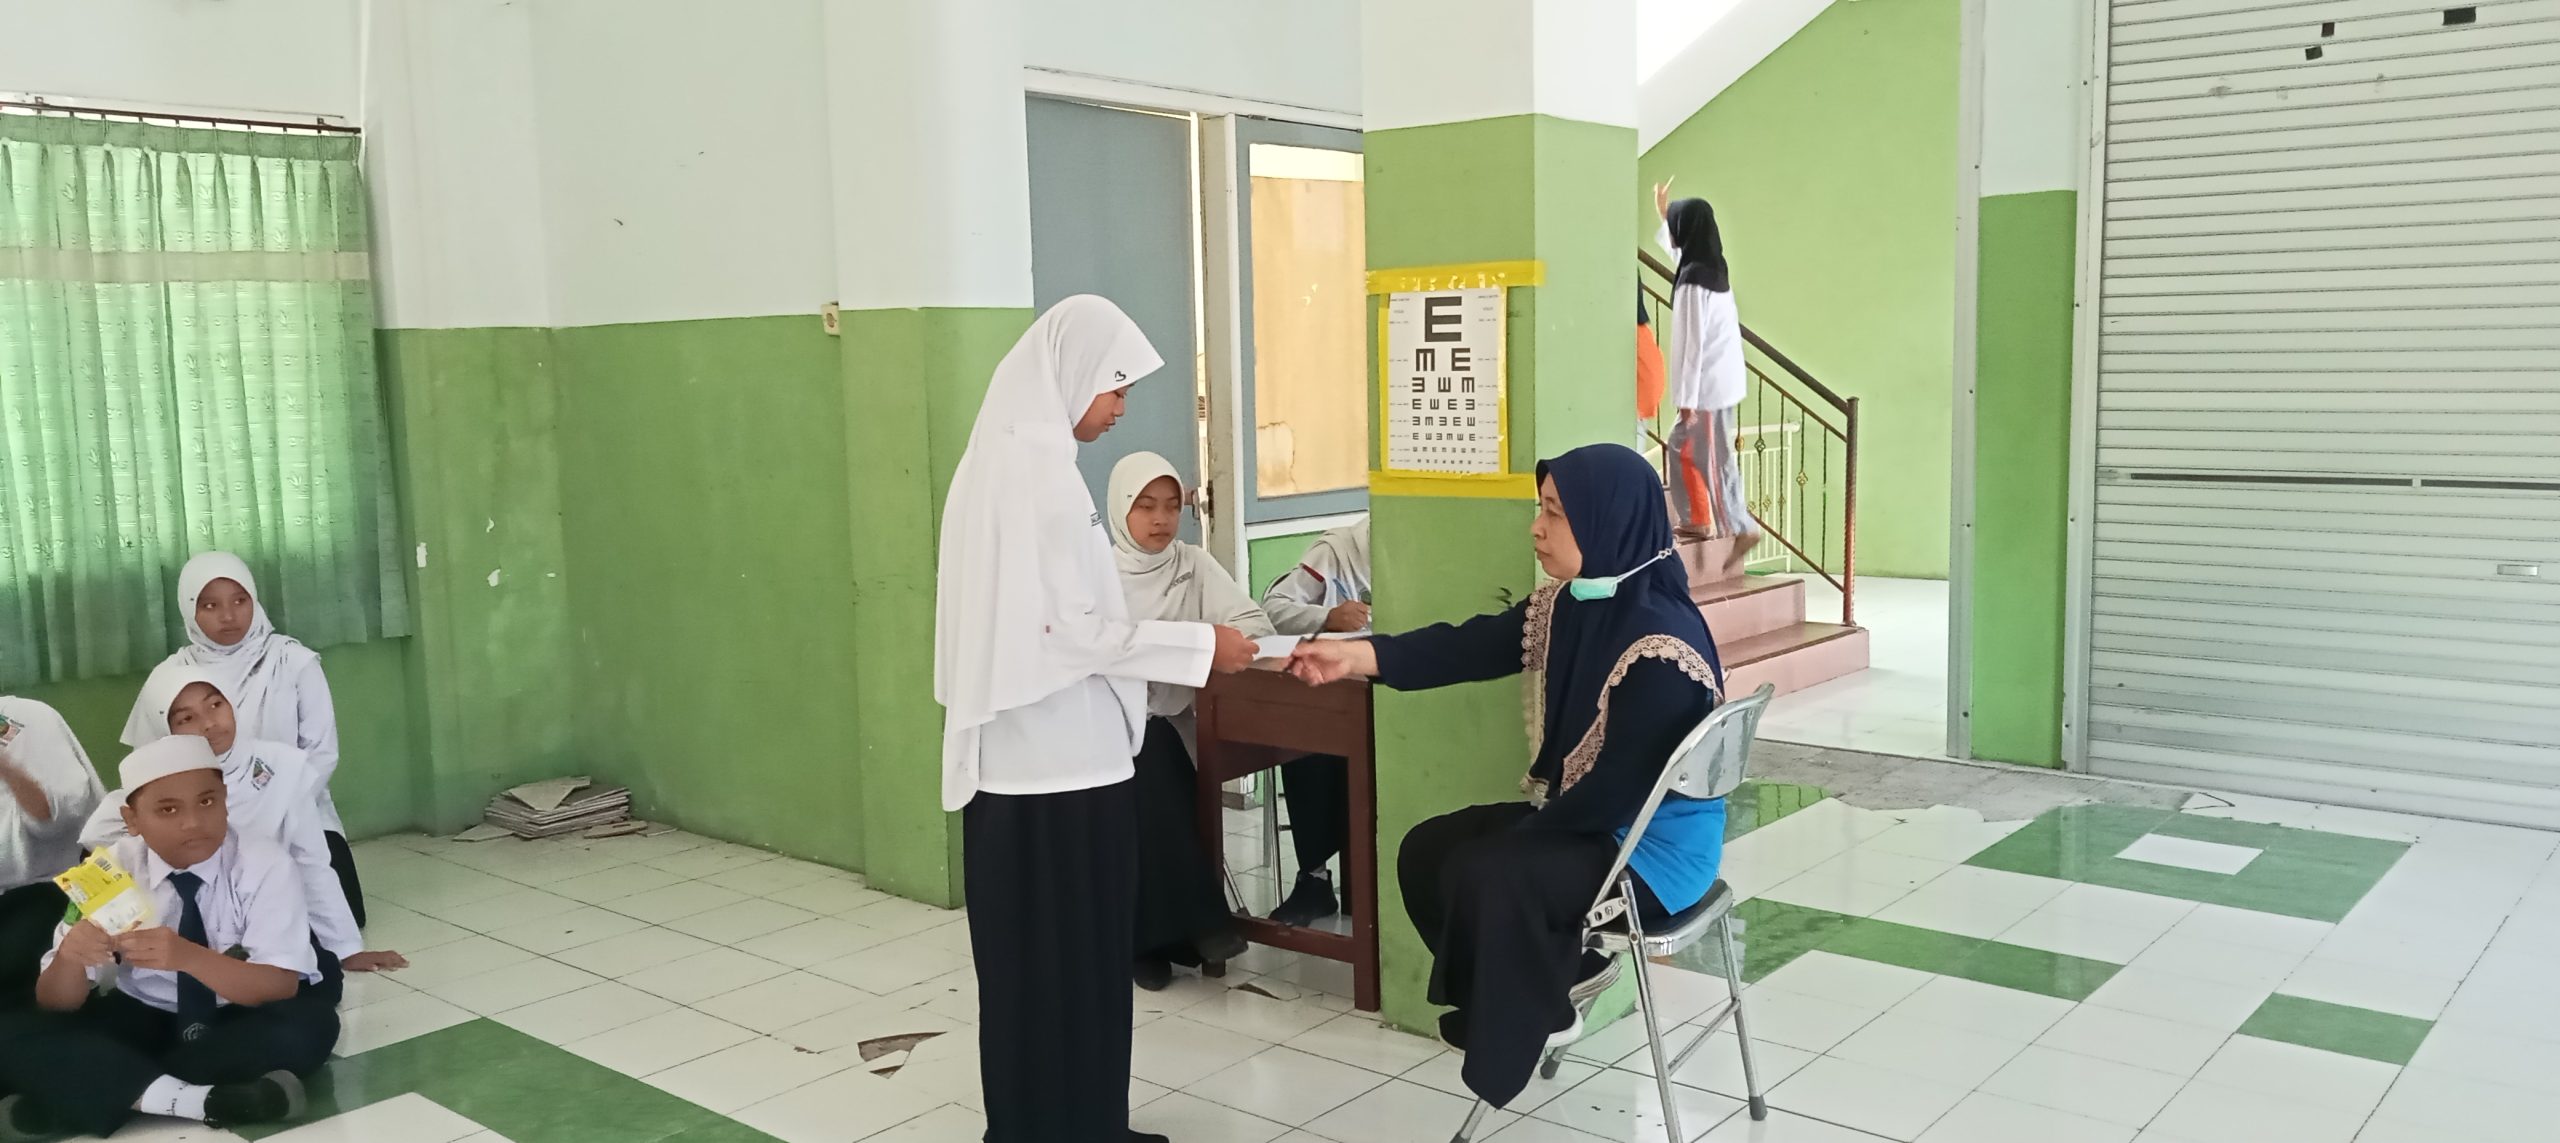 MTsN 1 Lumajang dan Puskesmas Rogotrunan Lumajang Kolaborasi dalam Pelaksanaan Screening Kesehatan Siswa Kelas 7